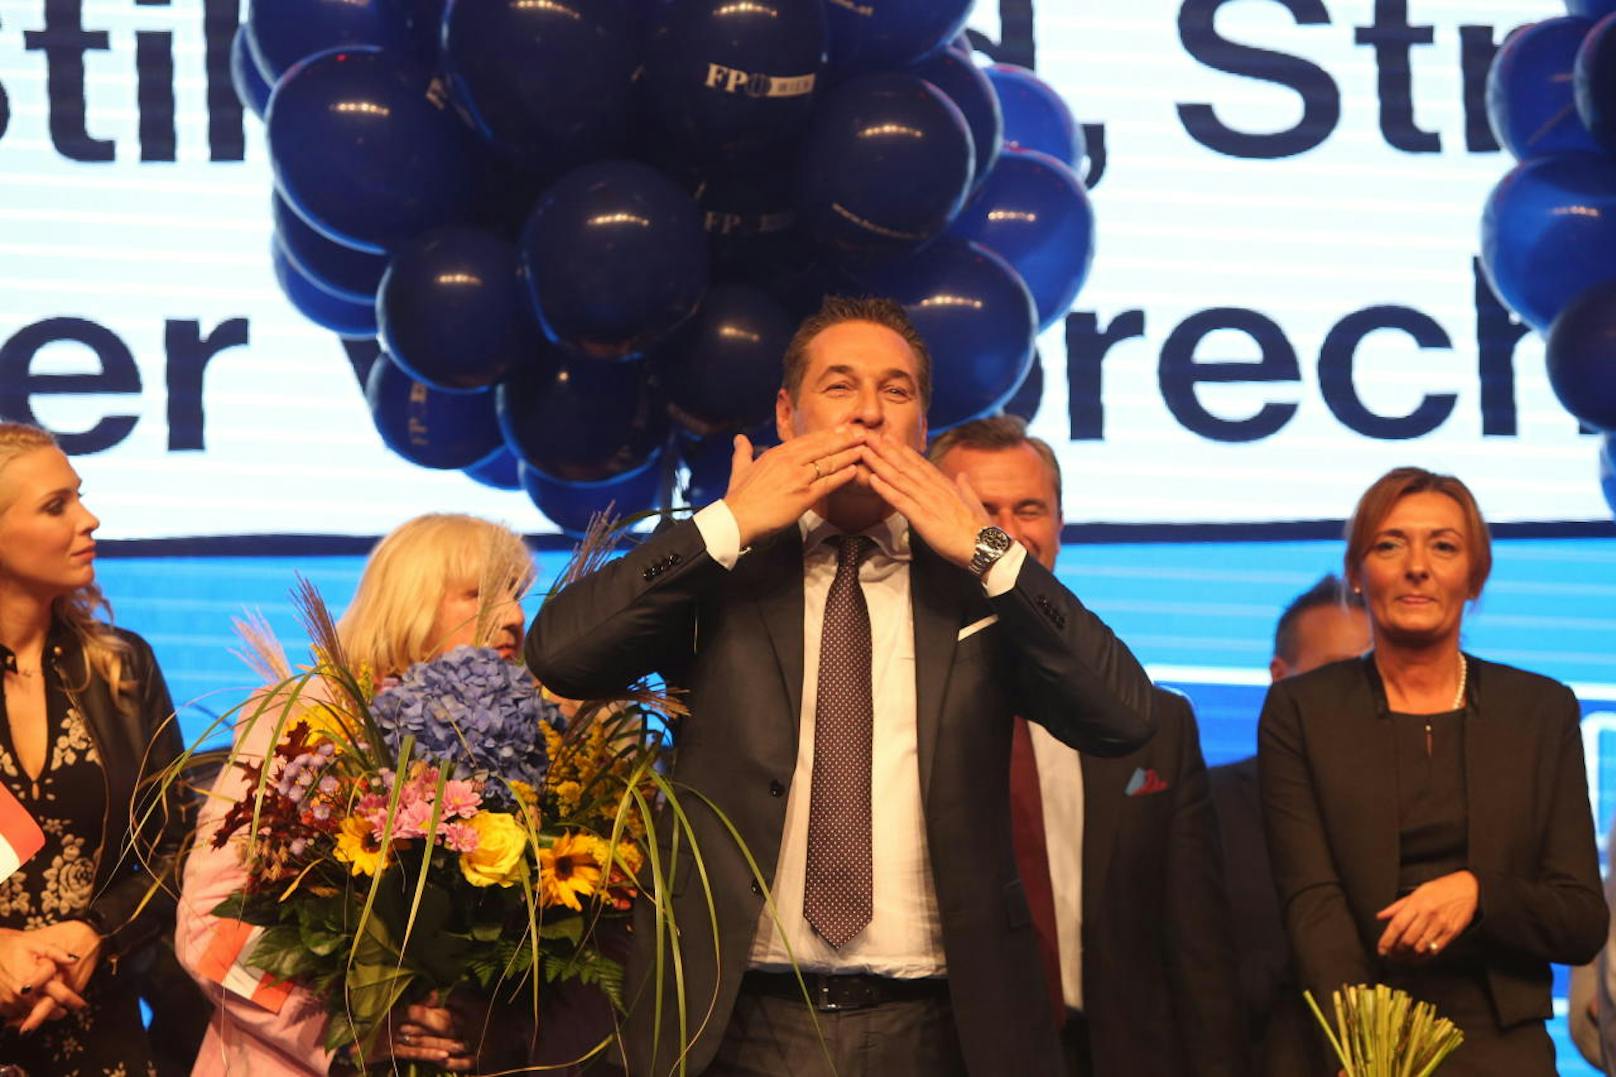 Heinz-Christian Strache führte die FPÖ zu ihrem bisher besten Ergebnis in einer Nationalratswahl und ließ sich dementsprechend feiern.